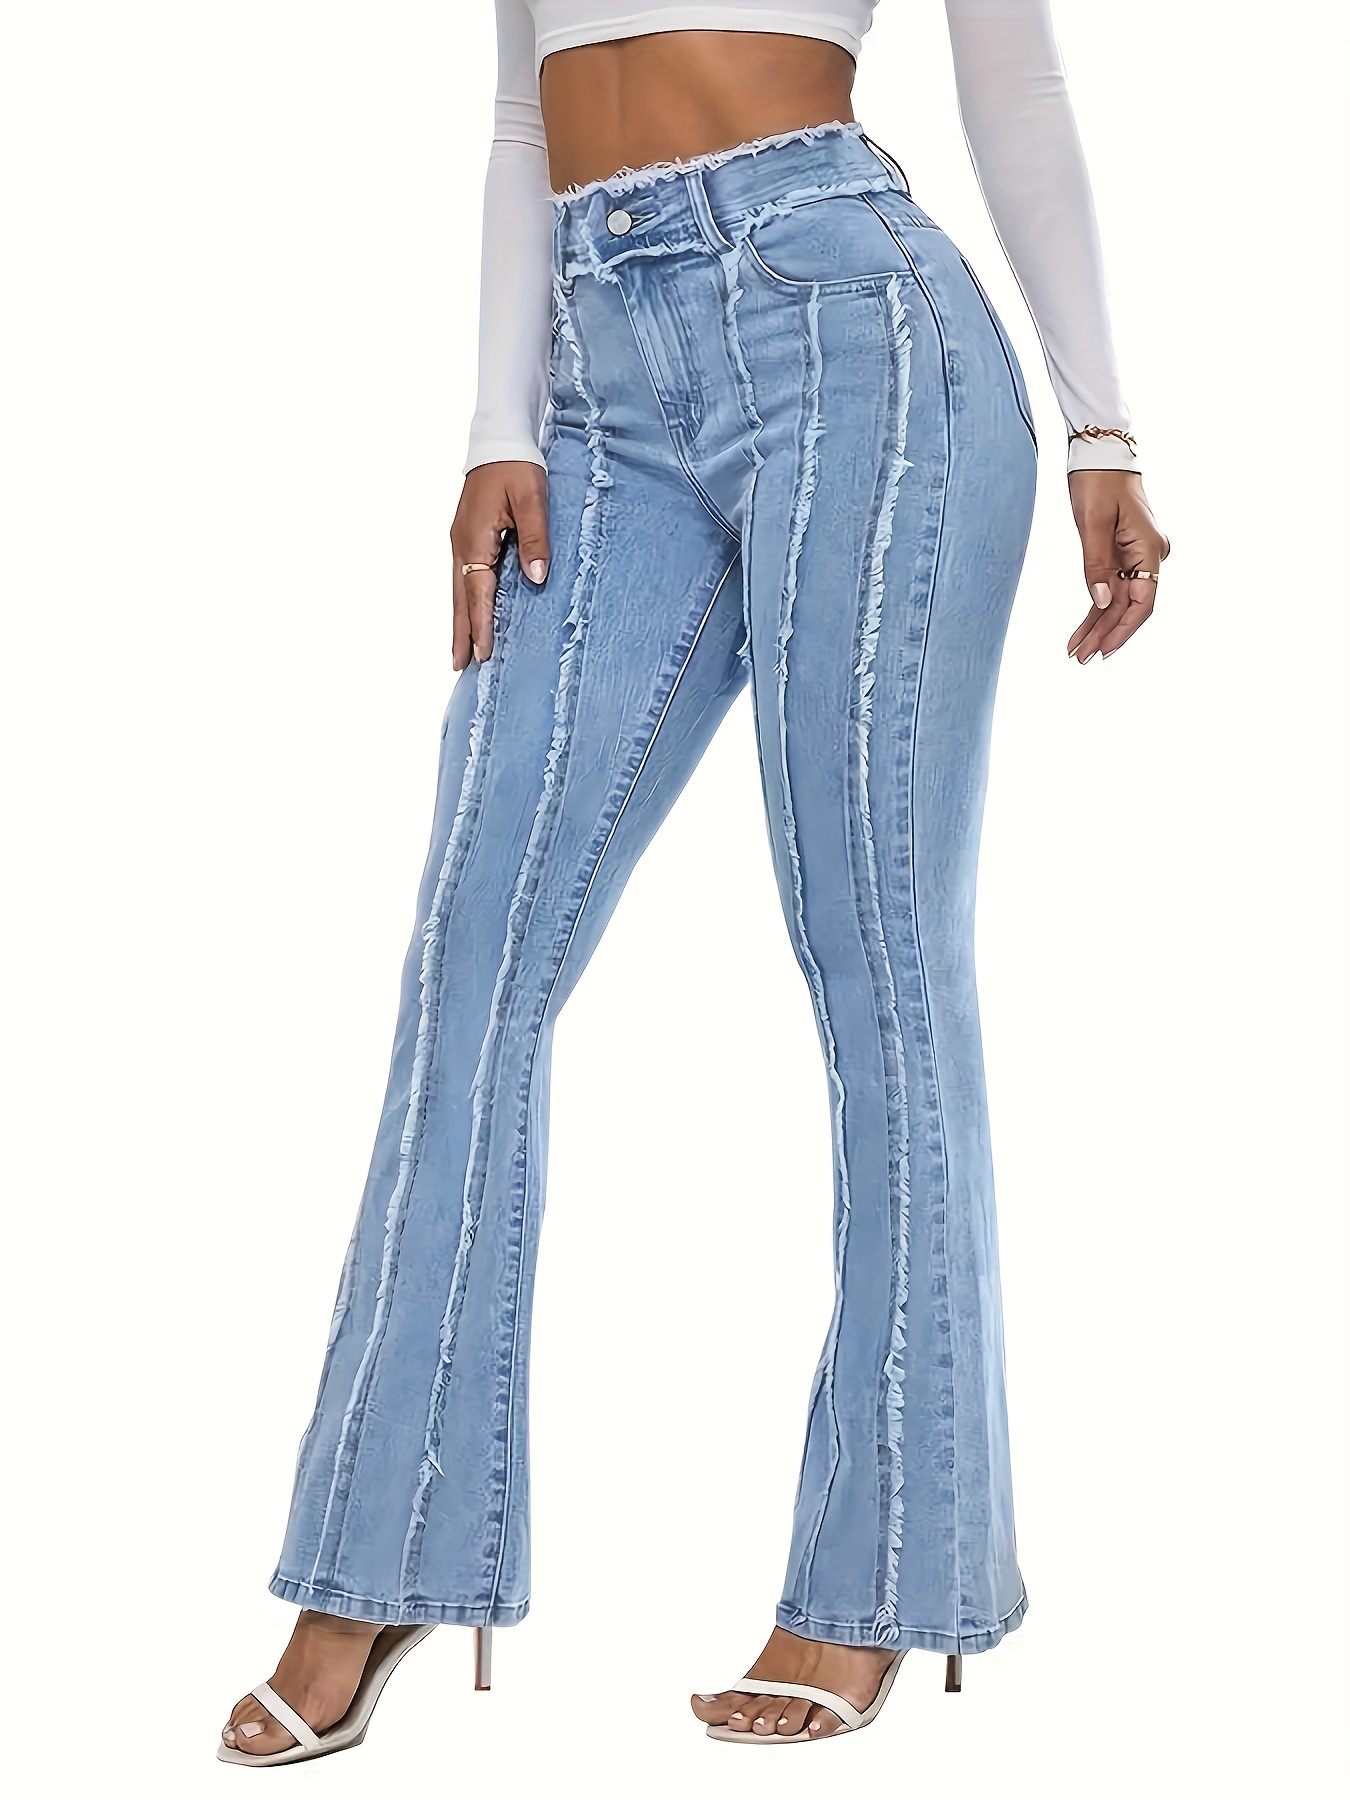 Jeans Ajustados De Cintura Alta Azul, Pantalones De Mezclilla De Estilo  Callejero Ultradesgastados, Jeans Y Ropa De Mujer